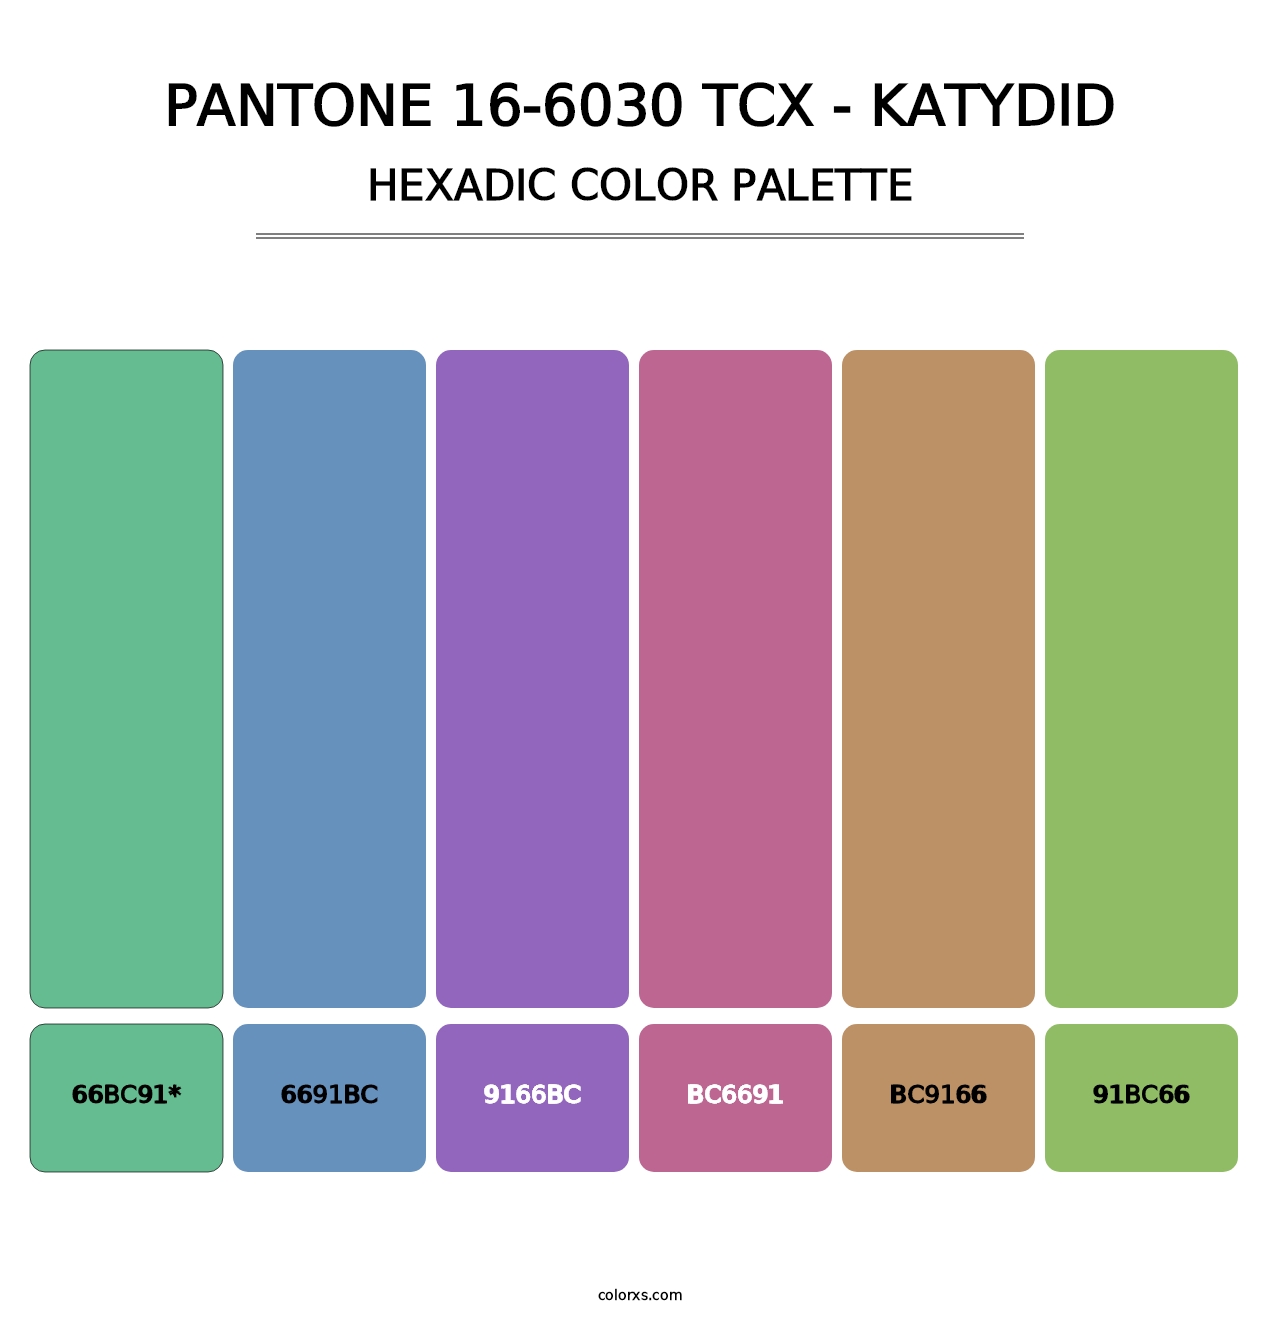 PANTONE 16-6030 TCX - Katydid - Hexadic Color Palette